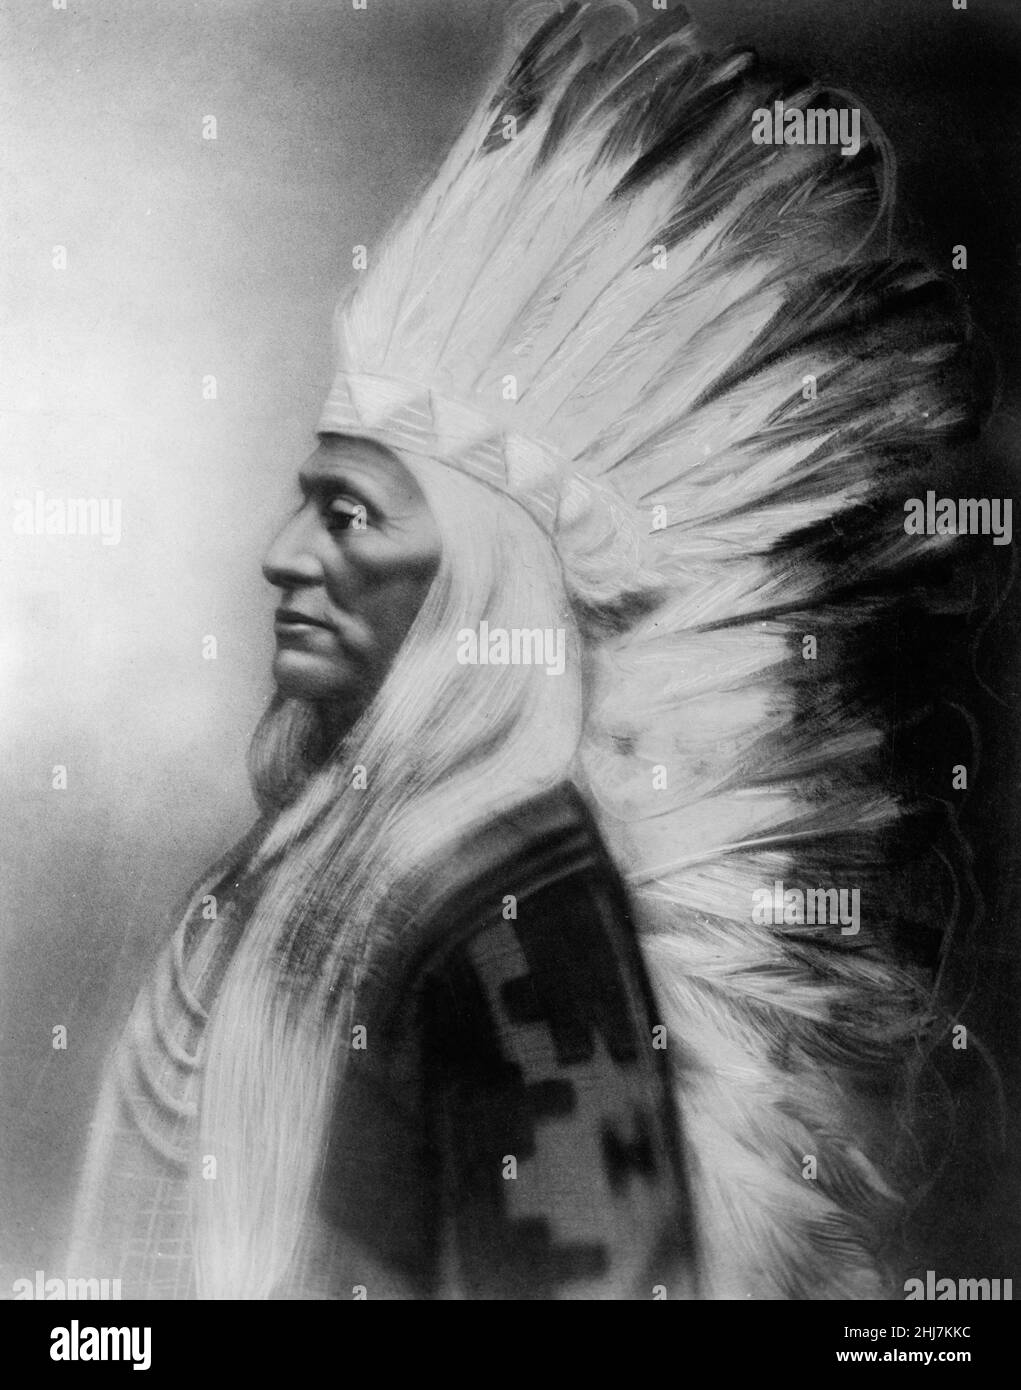 Washakie, chef de Shoshones, portrait en demi-longueur, orienté vers la gauche. Photo antique et vintage - amérindien / indien / américain indien. Banque D'Images